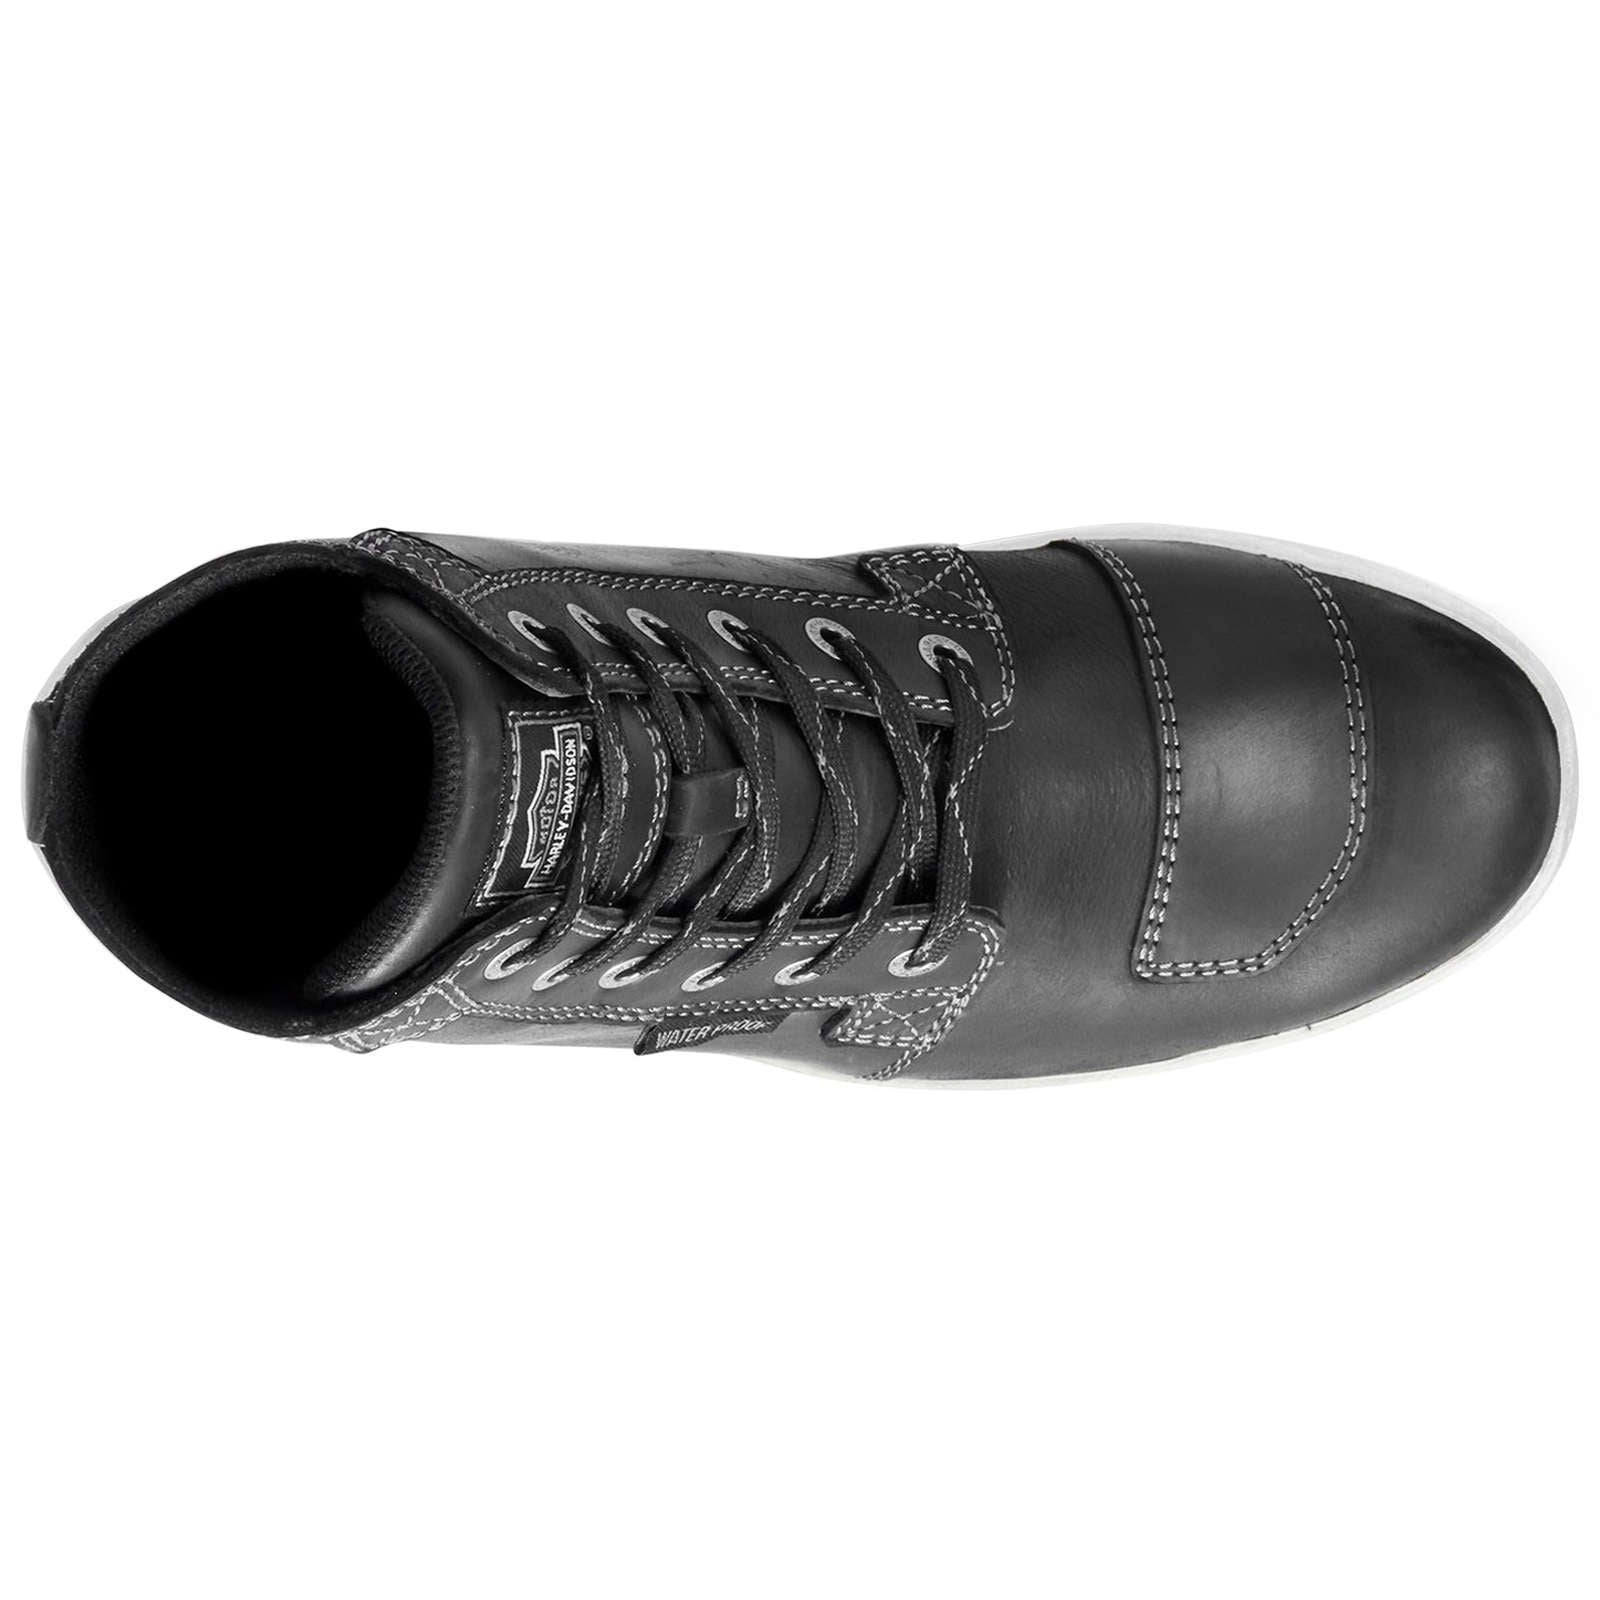 Harley Davidson Steinman Waterproof Full Grain Leather Men's High-Top Sneakers#color_black